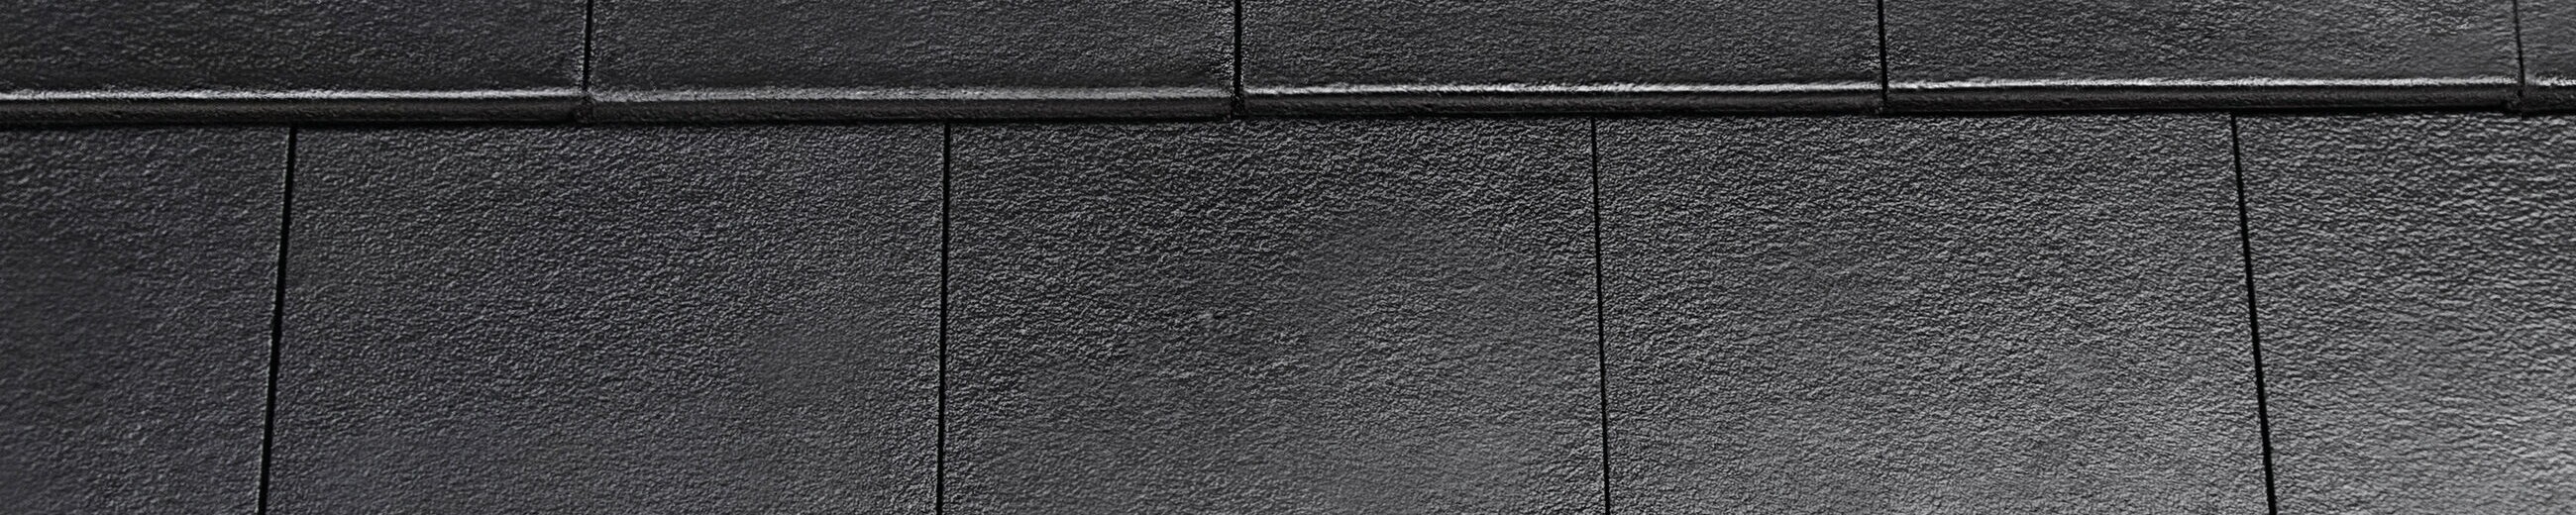 dachówka cementowa KAPSTADT DURATOP PRO w kolorze czarnym